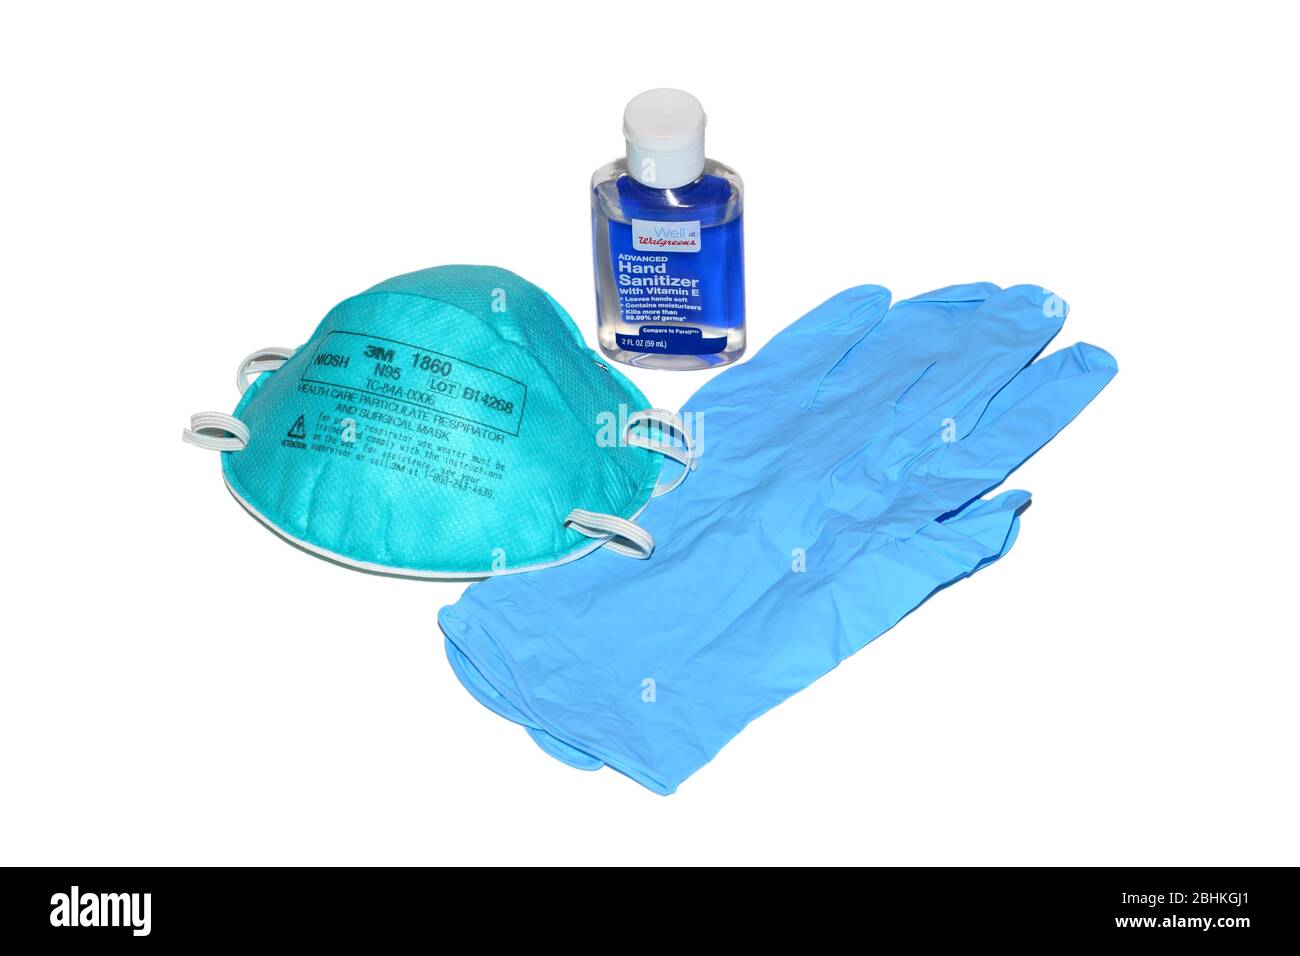 Un flacon de désinfectant pour les mains, un masque respiratoire N95 chirurgical et des gants jetables en nitrile isolés sur un fond blanc. Image découpée. Banque D'Images